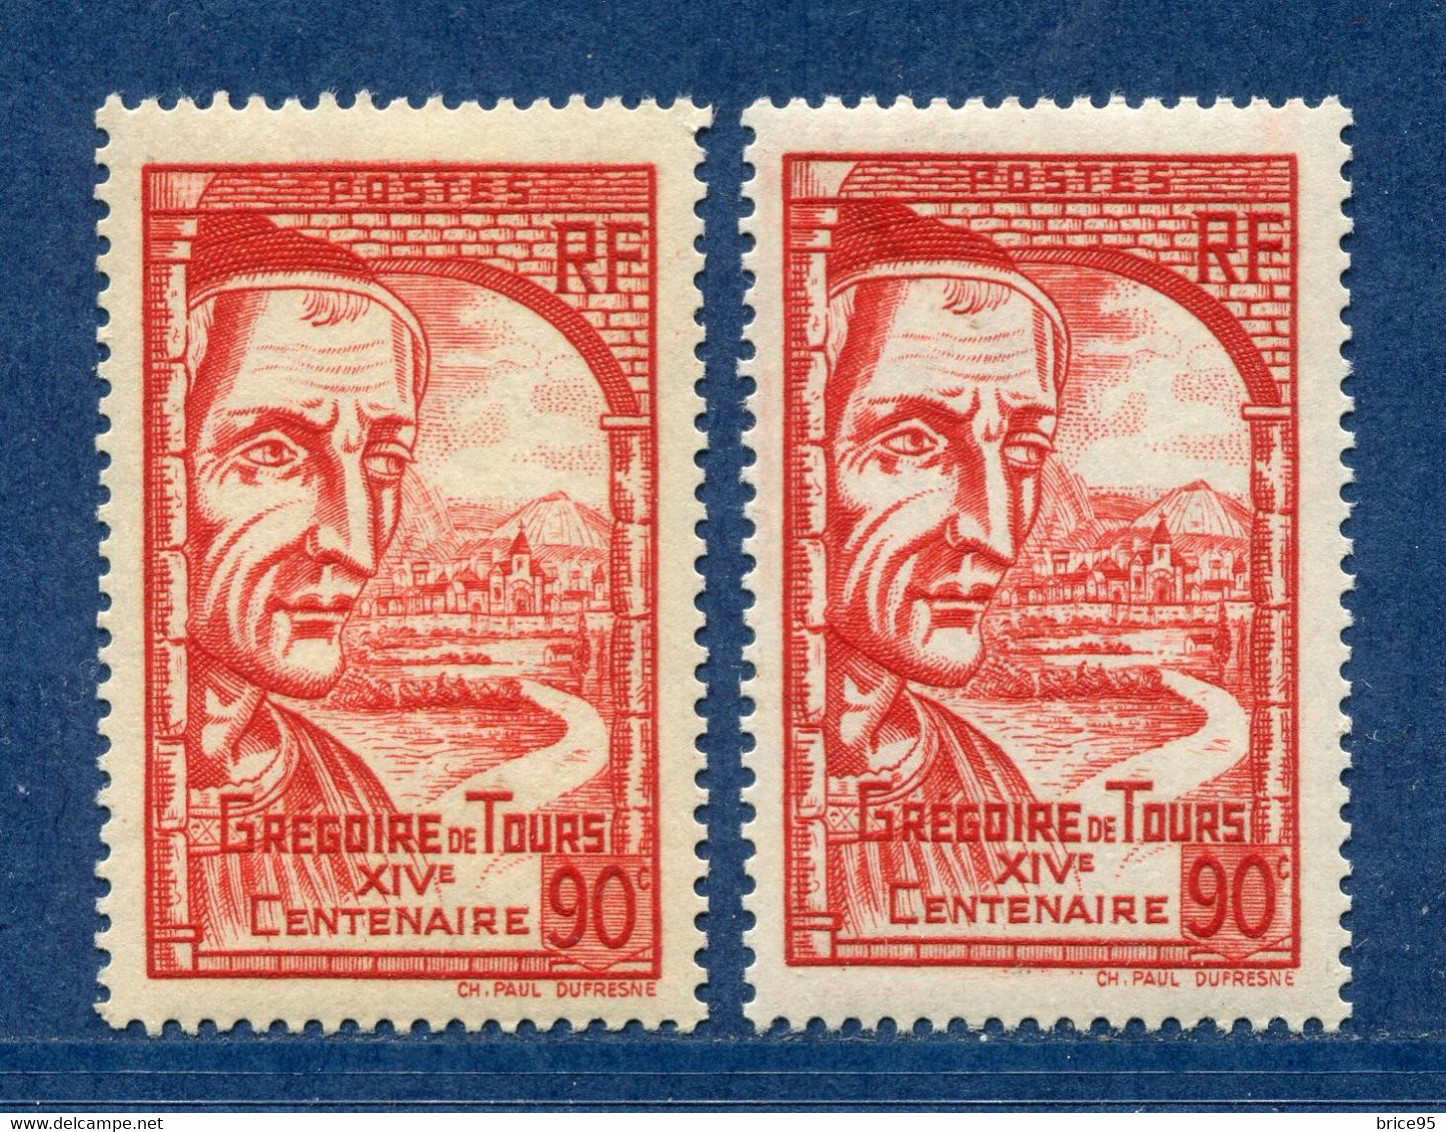 ⭐ France - Variété - YT N° 442 - Couleurs - Pétouille - Neuf Sans Charnière - 1939 ⭐ - Unused Stamps